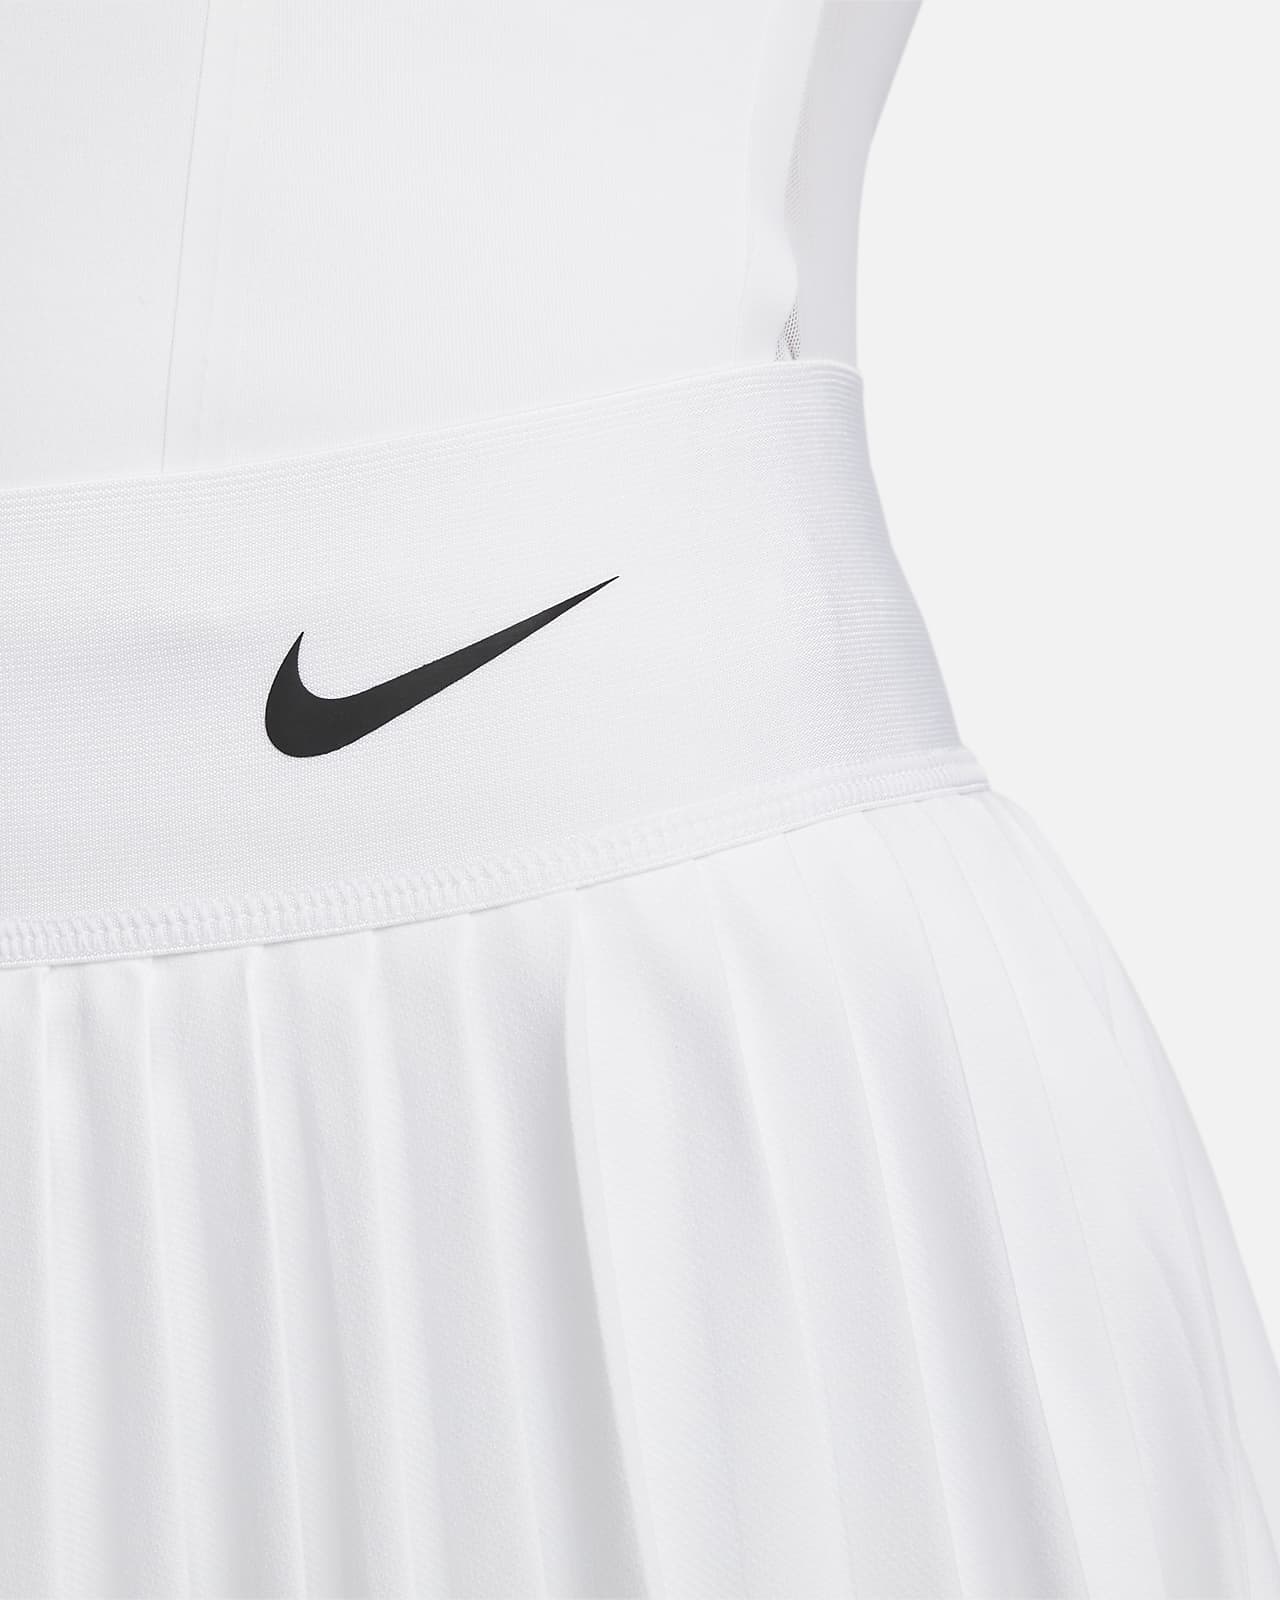 NIKE DriFit Court Skirted Leggings Attached Tennis Skirt Pull On Skapri Pants  XL